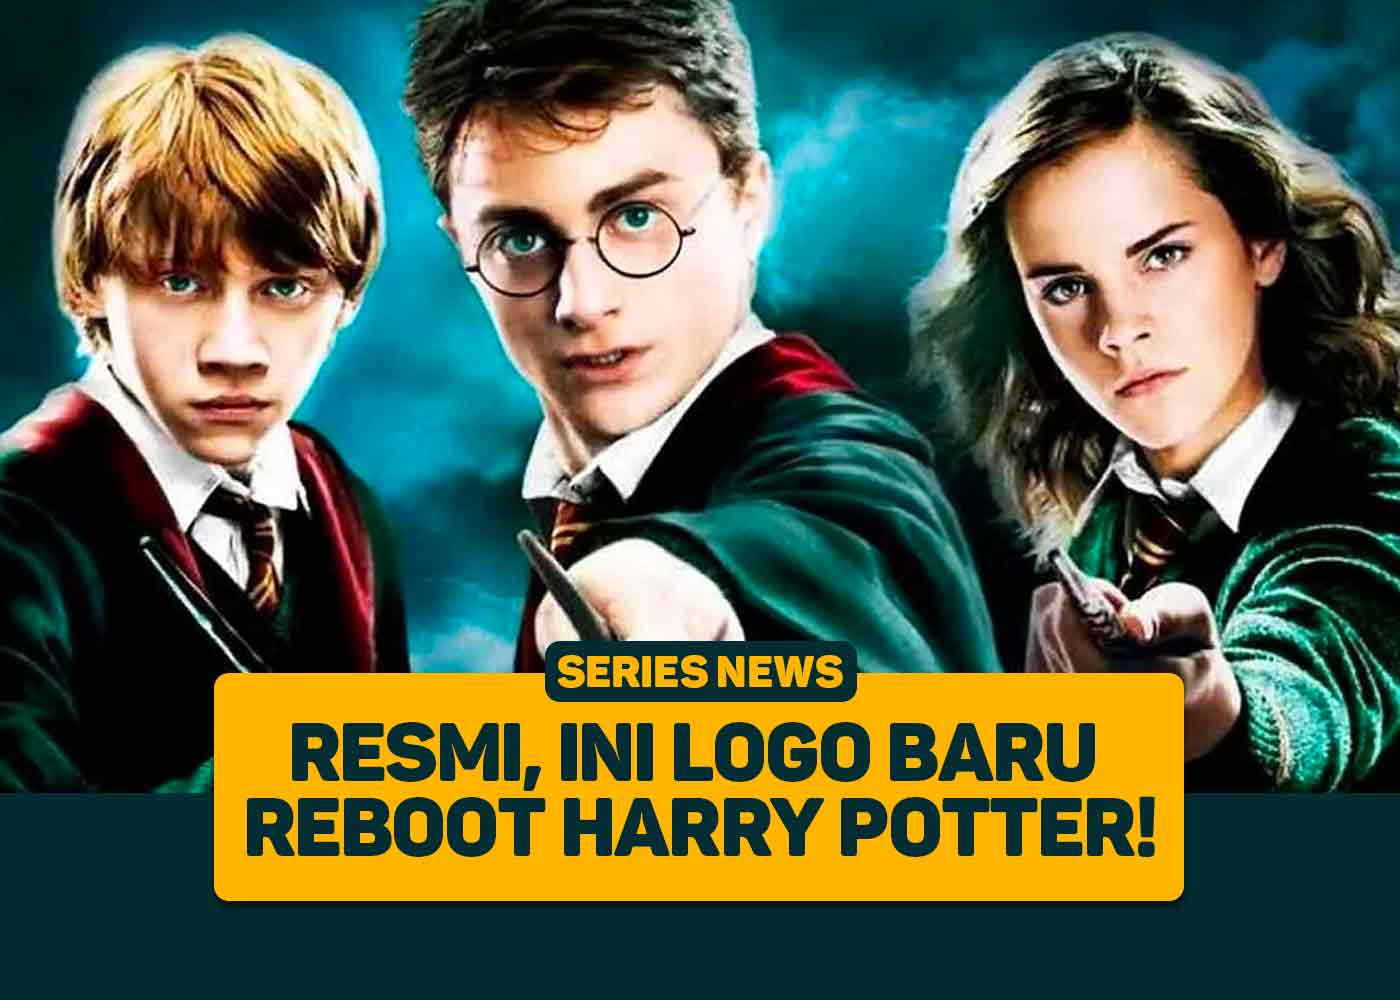 Ini resmi, inilah logo reboot Harry Potter yang baru!